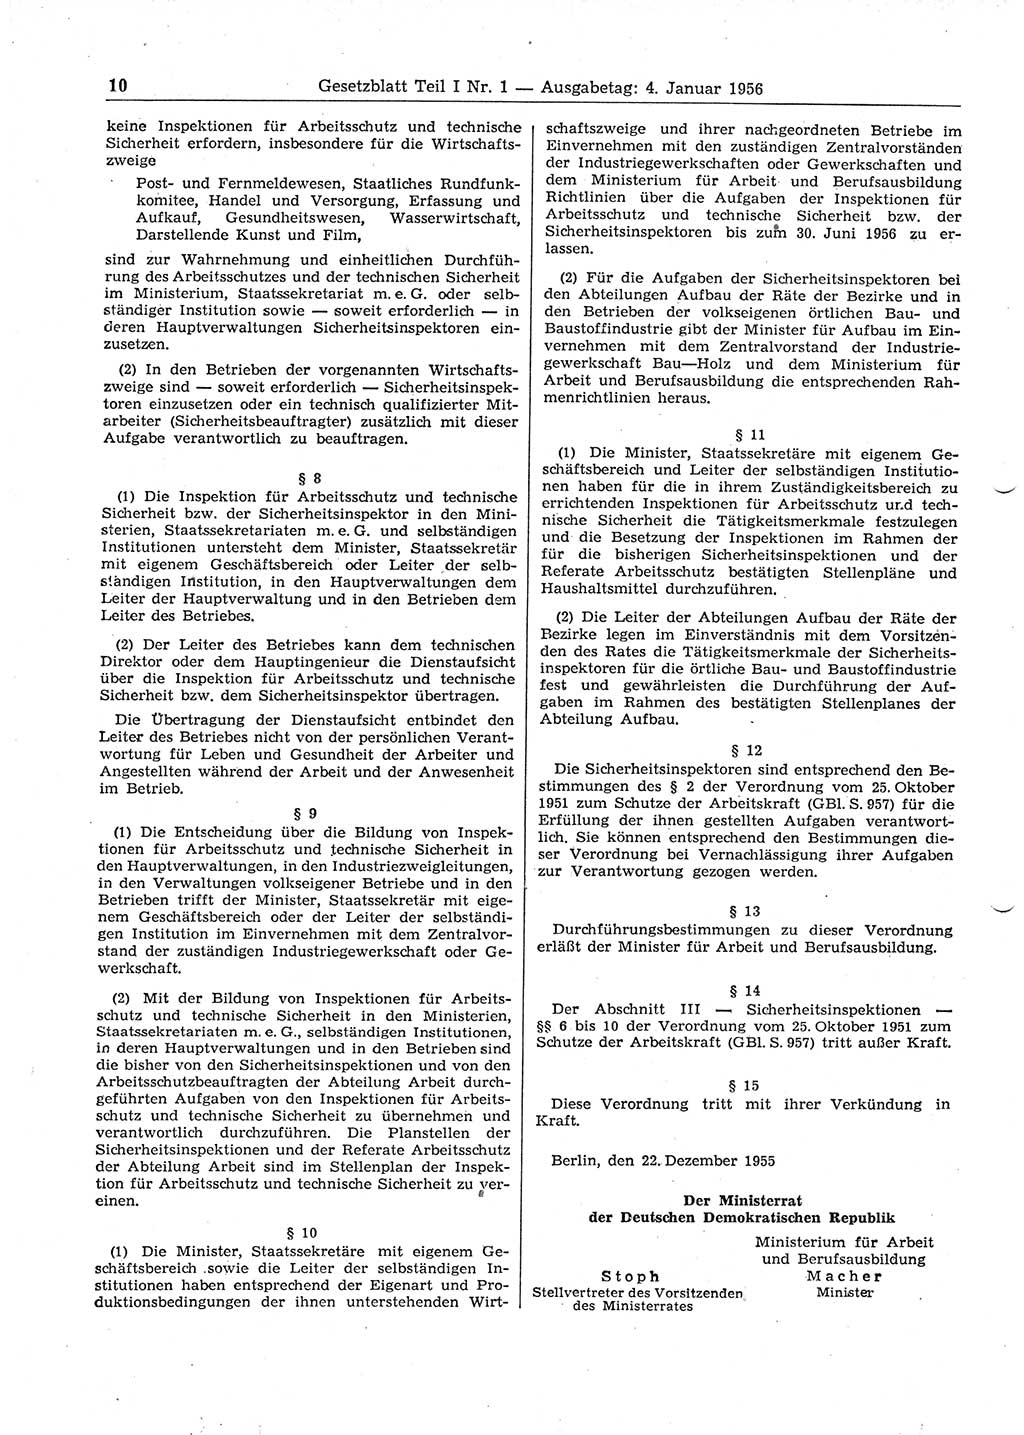 Gesetzblatt (GBl.) der Deutschen Demokratischen Republik (DDR) Teil Ⅰ 1956, Seite 10 (GBl. DDR Ⅰ 1956, S. 10)